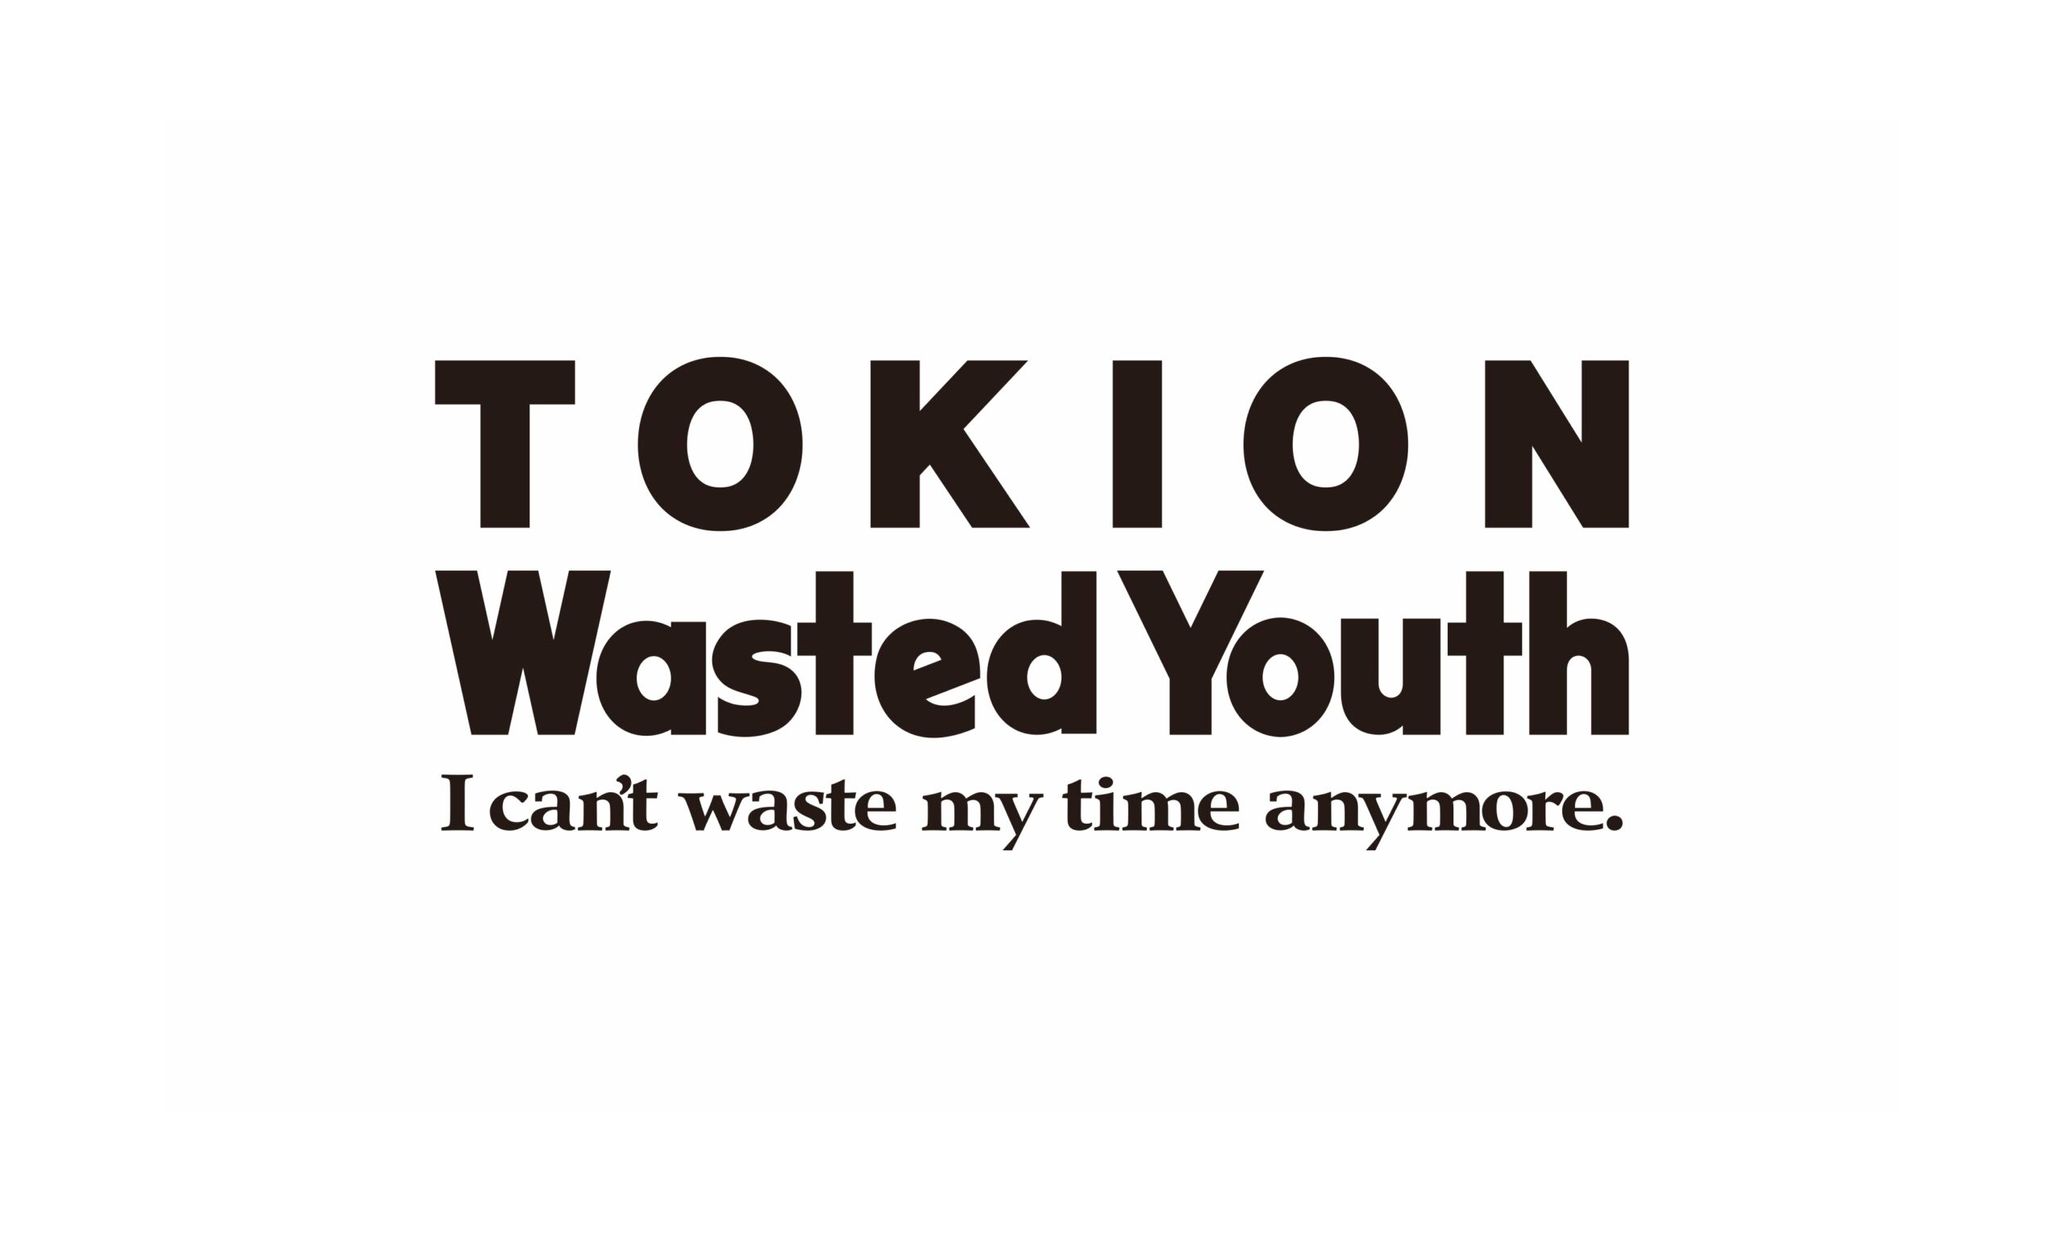 グラフィックアーティスト、VERDYによるポップアップイベント「TOKION 